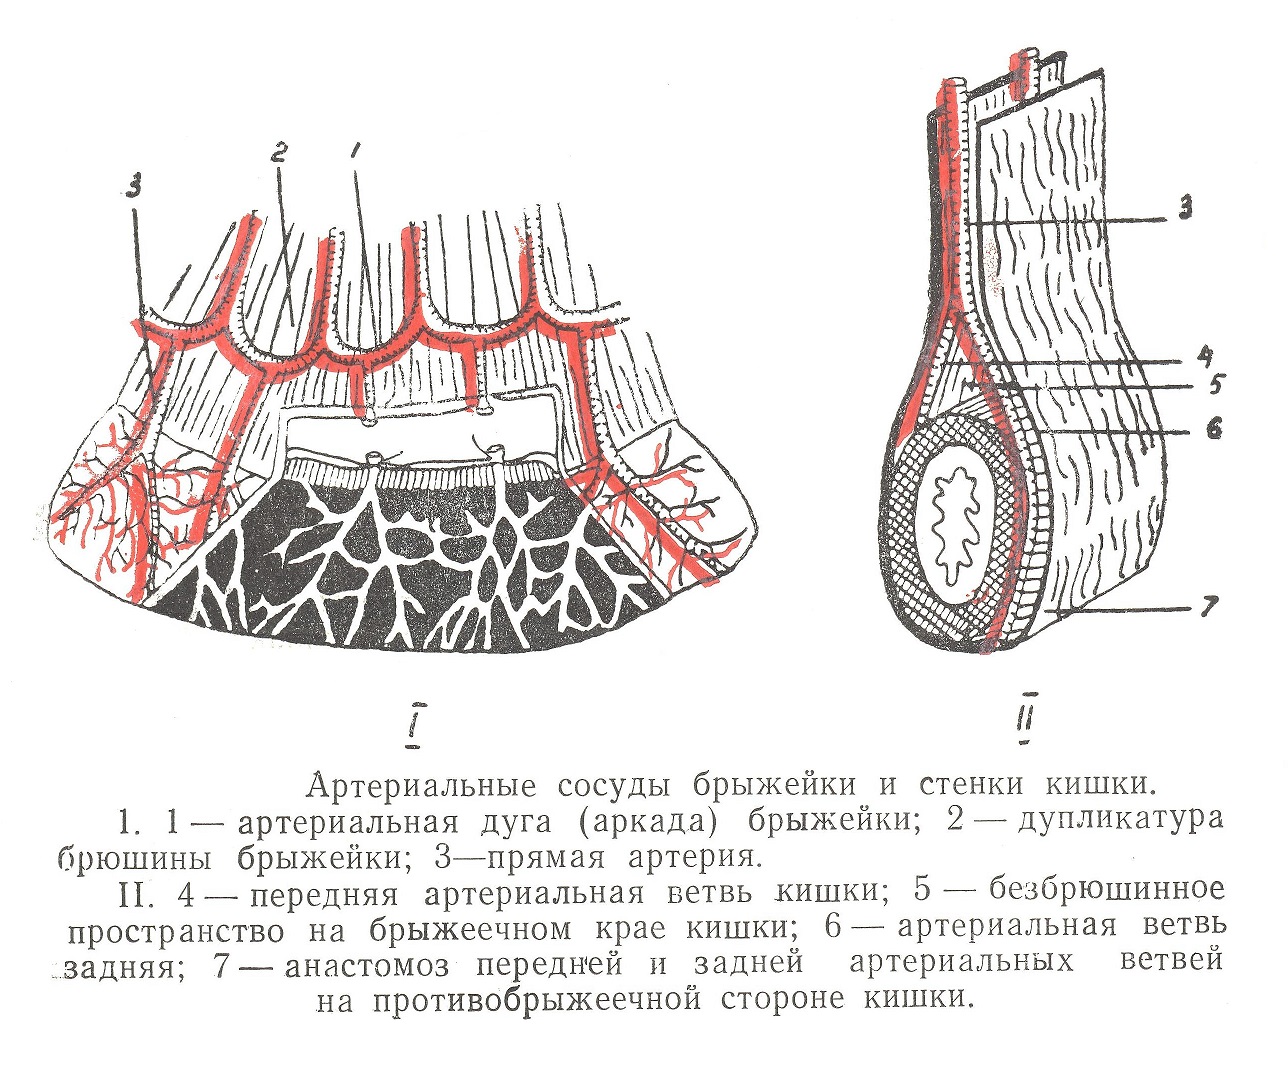 Артериальные сосуды брыжейки и стенок кишки